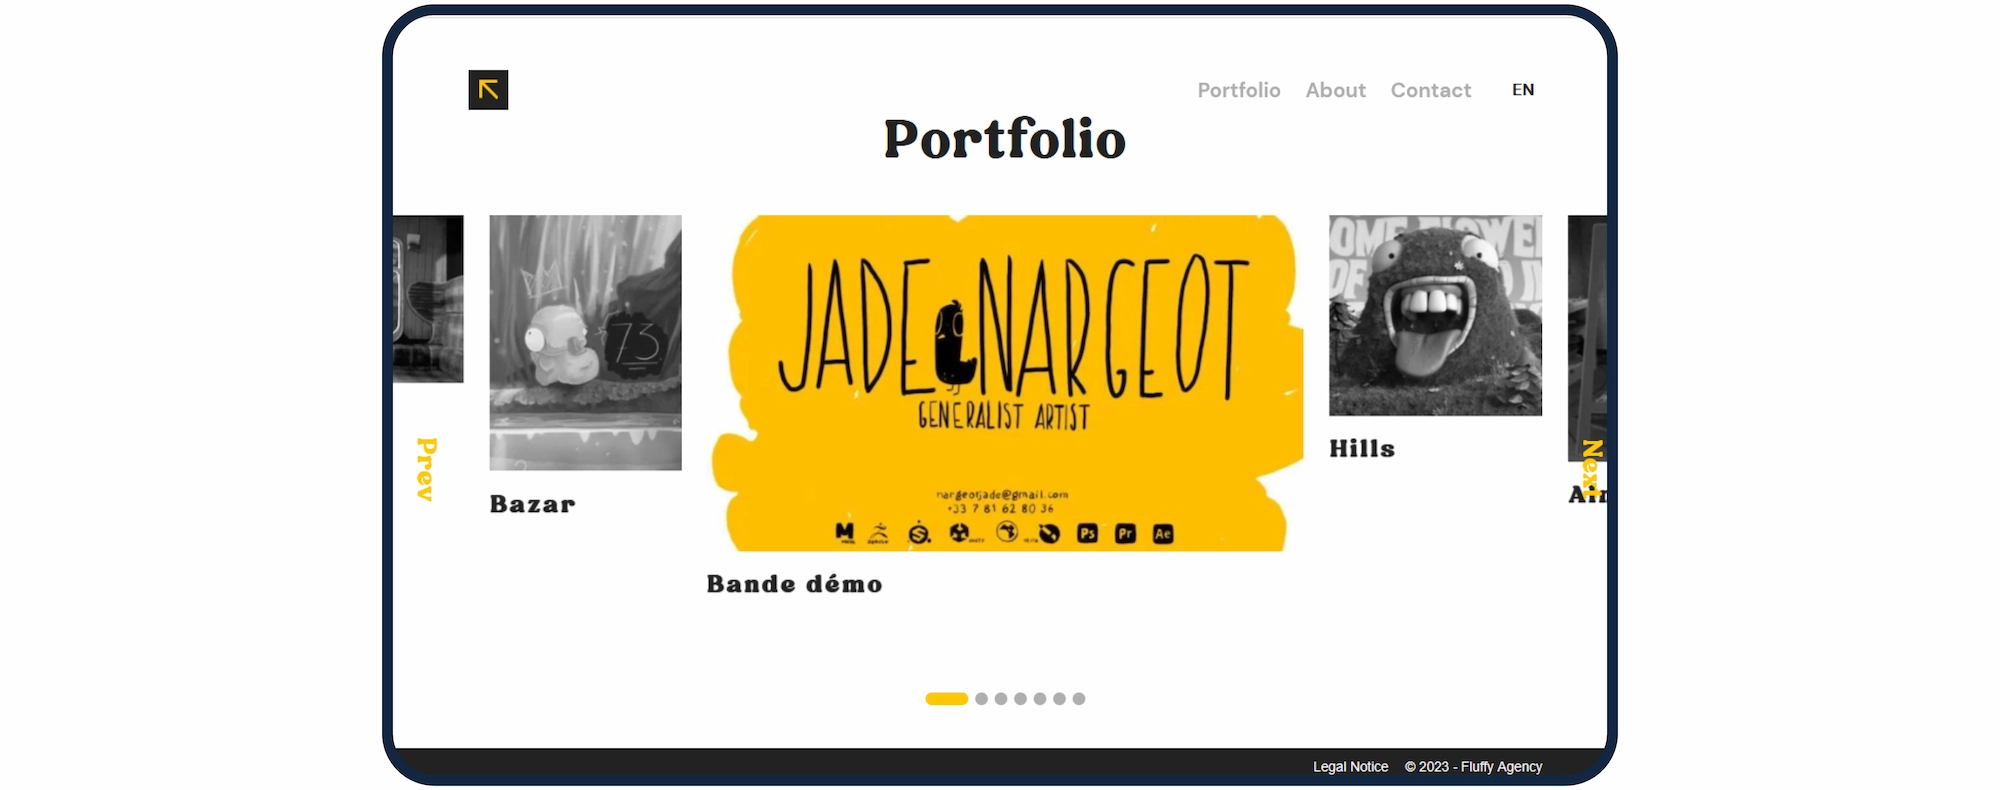 La page portfolio du site de Jade Nargeot, présente ses réalisations 3D